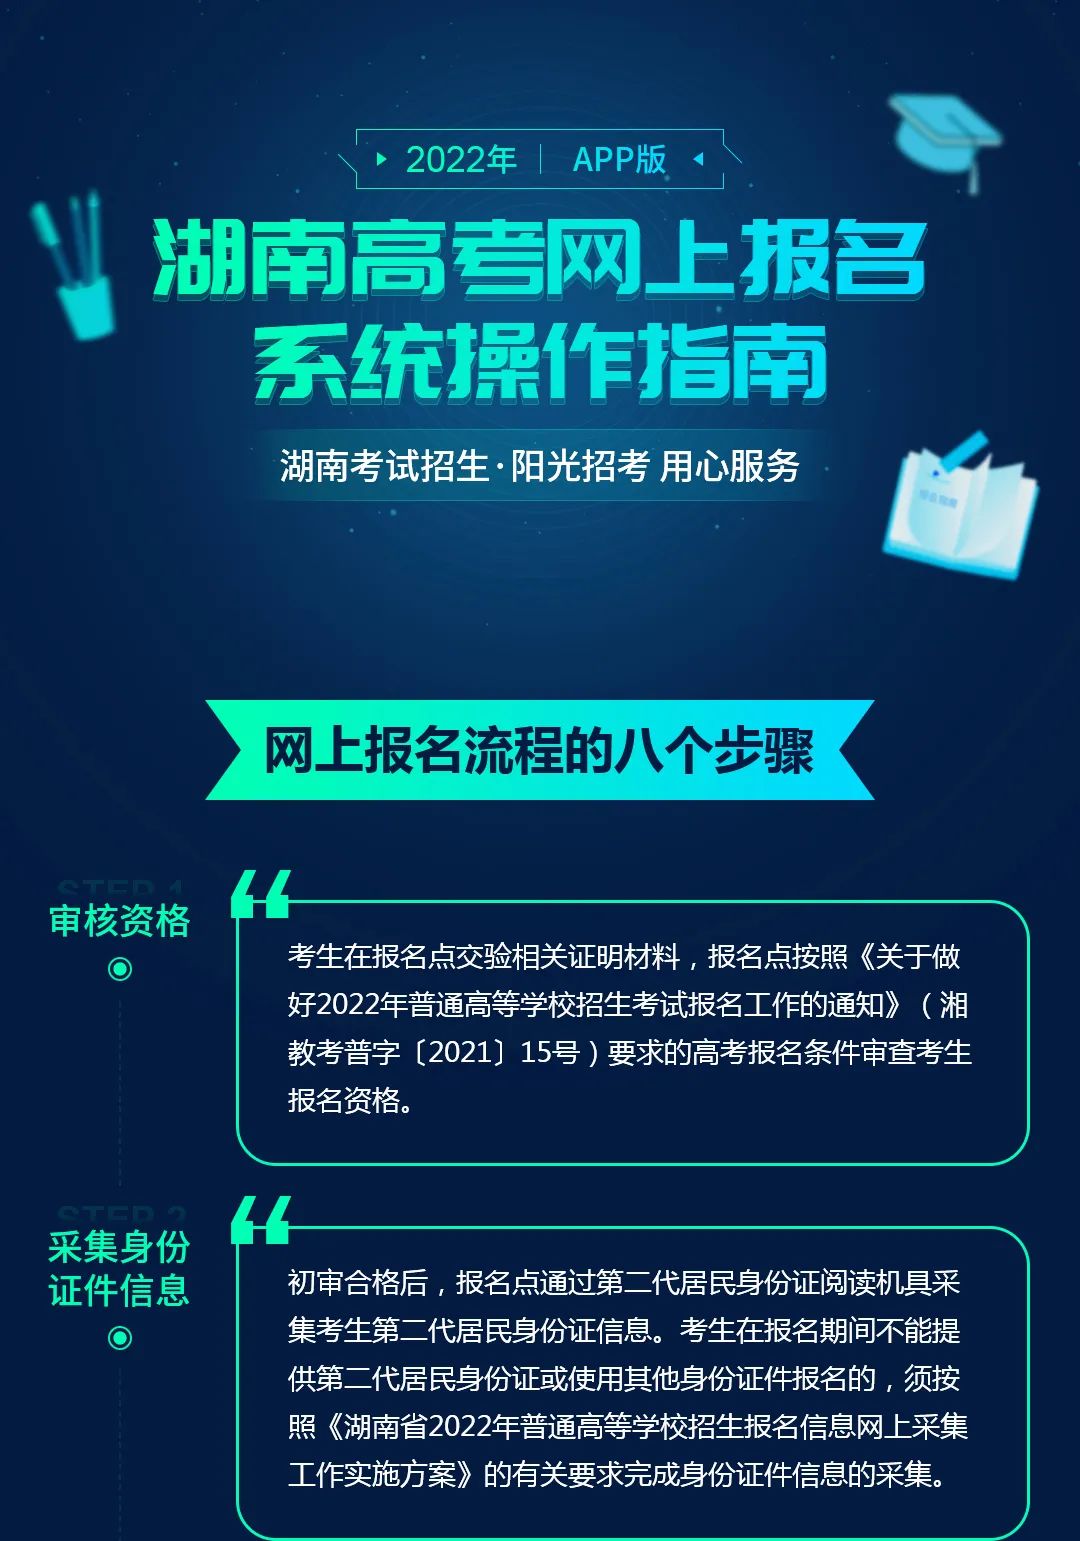 2022年湖南省統一考試網上報名今日開始 網上報名系統操作指南看這里！